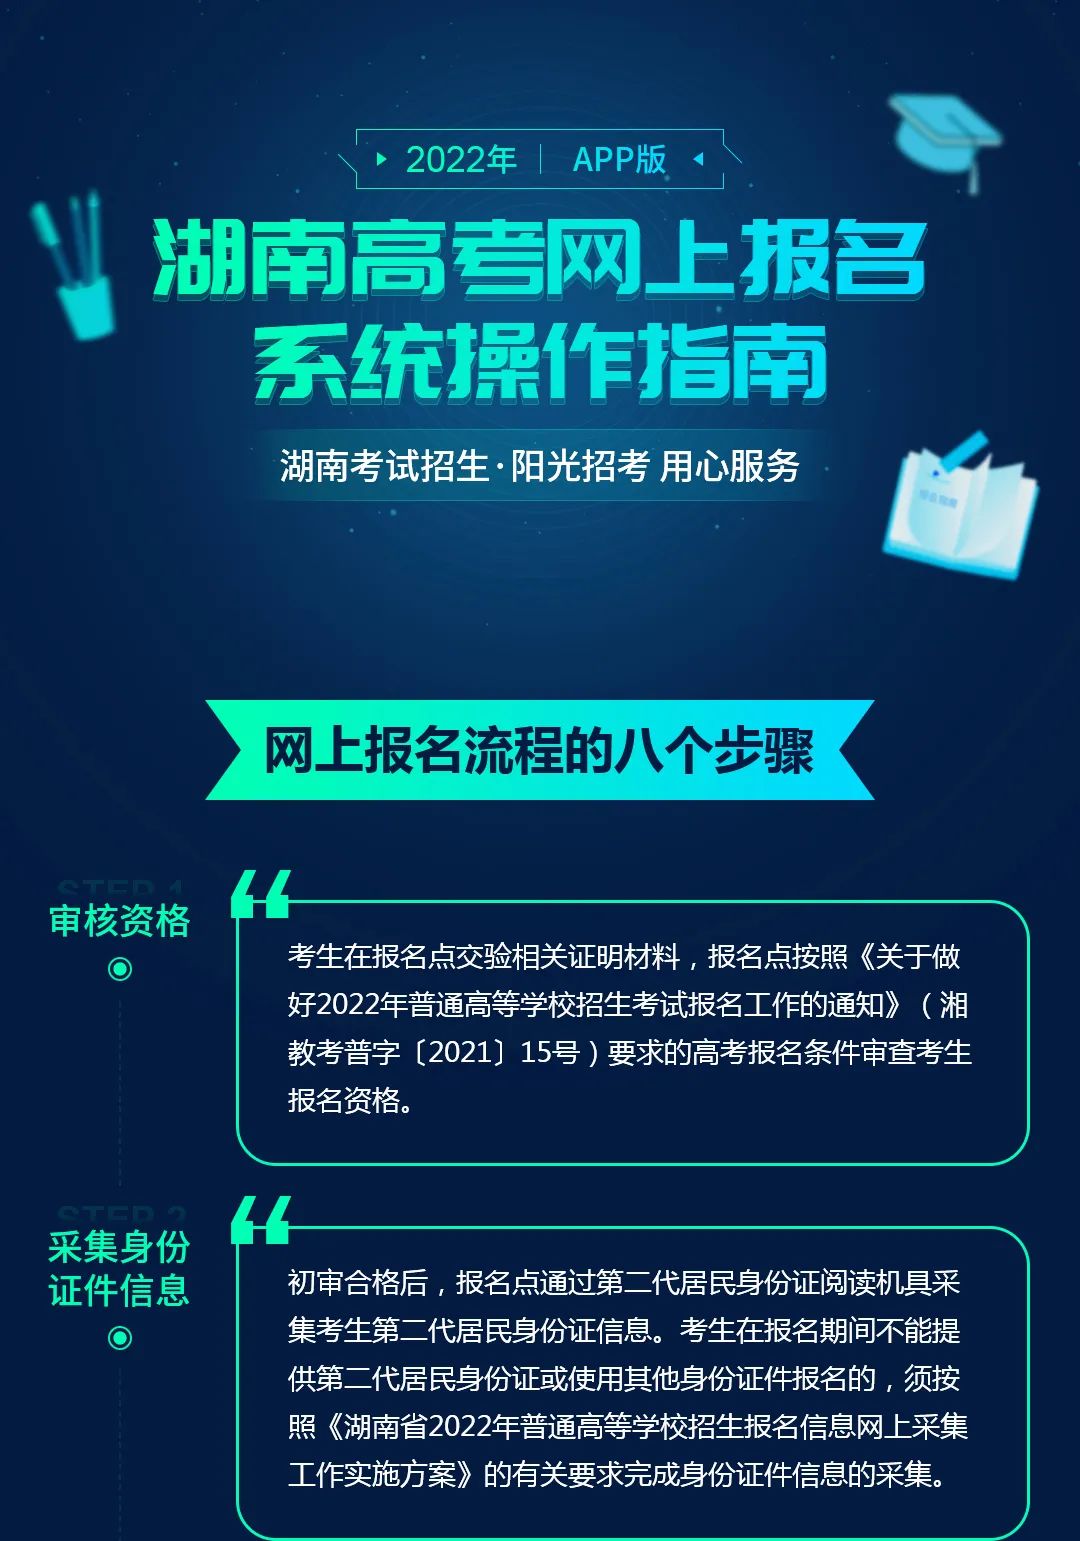 2022年湖南省統一考試網上報名今日開始 網上報名系統操作指南看這里！